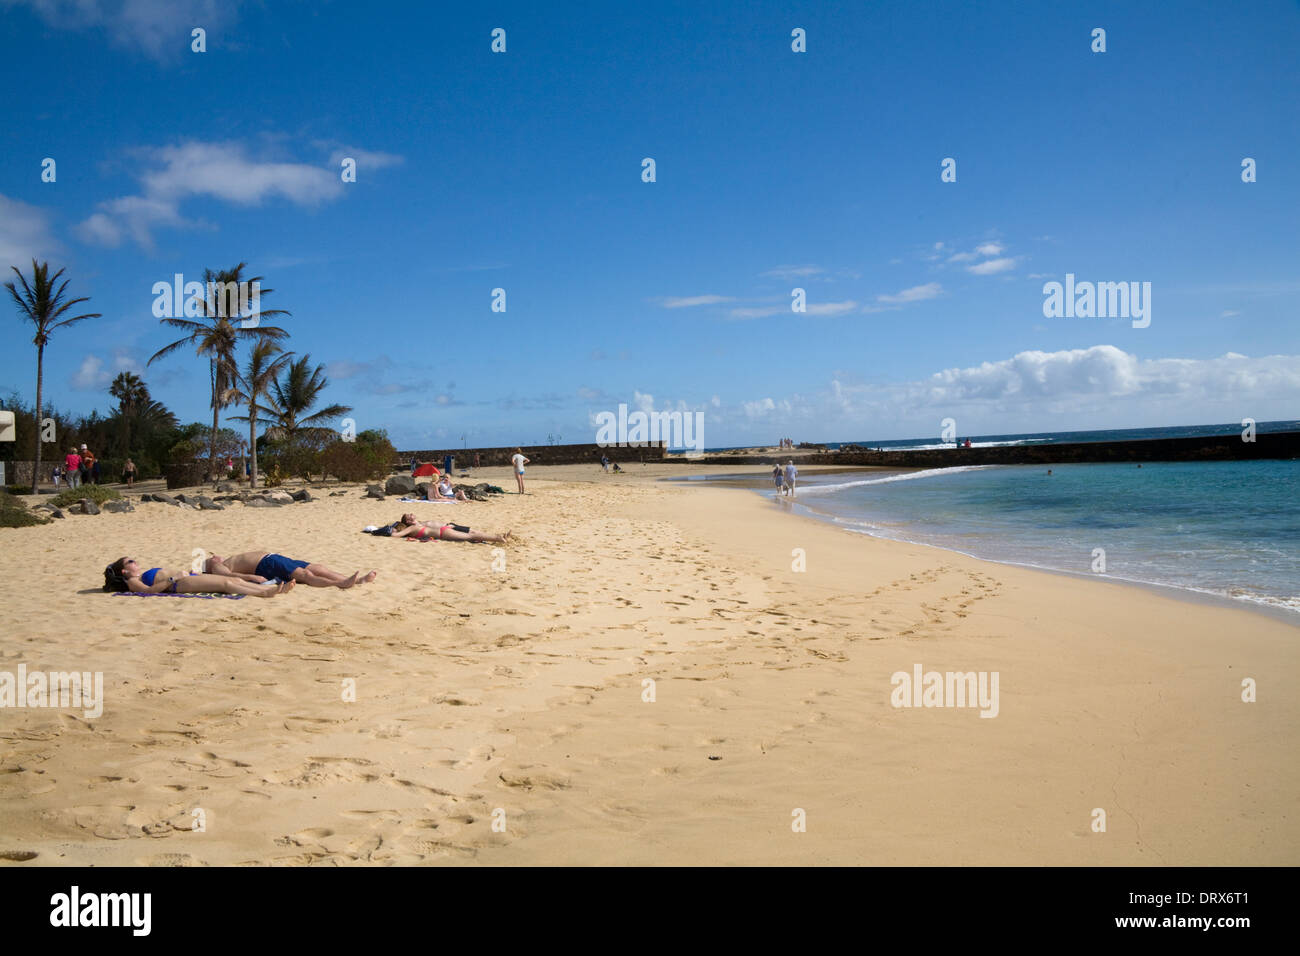 Playa de Las Cucharas Costa Teguise Lanzarote i visitatori a prendere il sole sulla bella spiaggia di sabbia dorata di Playa de Las Cucharas Foto Stock